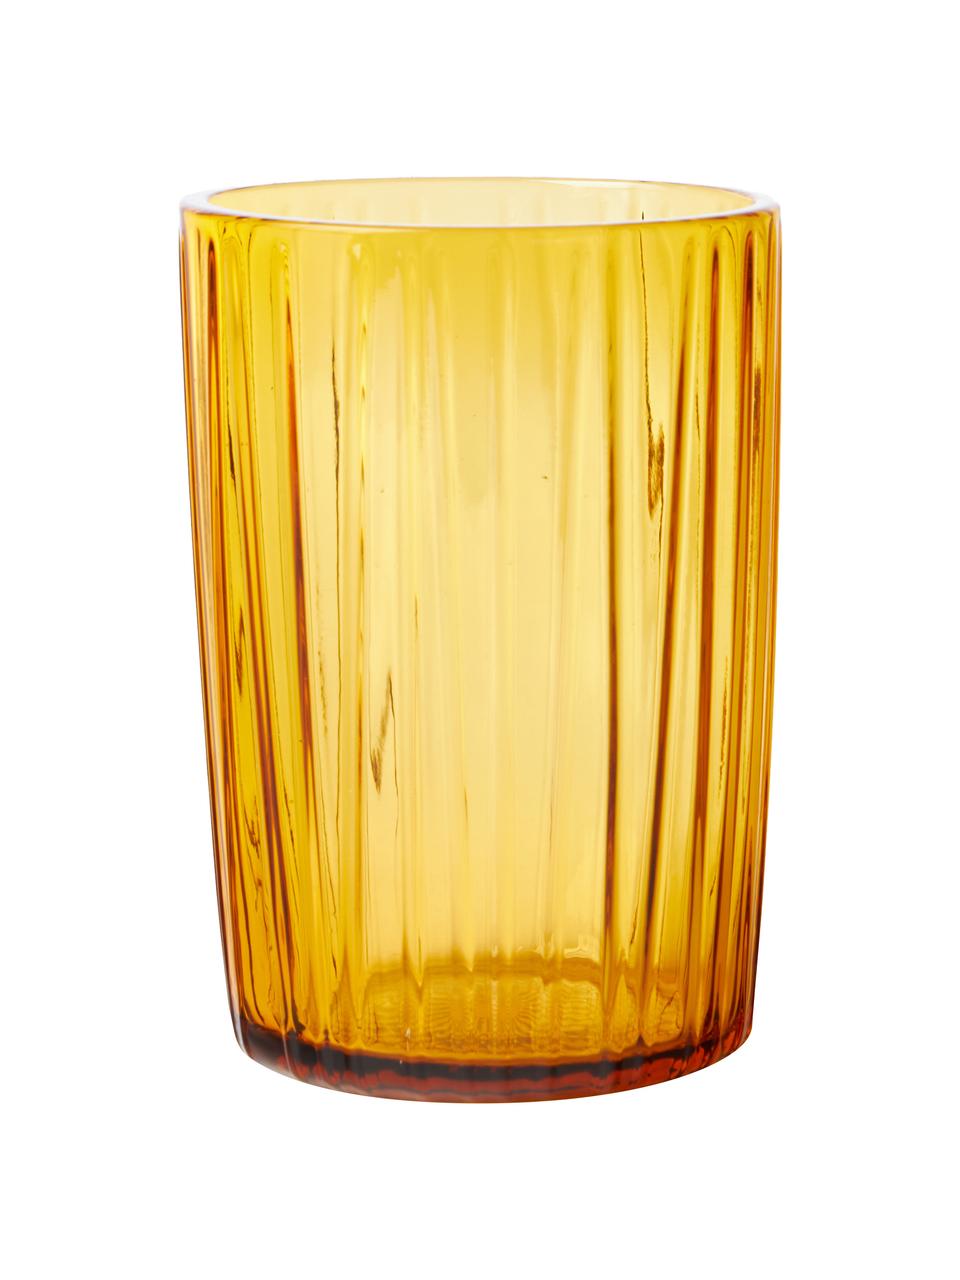 Wassergläser Kusintha in Gelb mit Rillenrelief, 4 Stück, Glas, Gelb, Transparent, Ø 7 x H 10 cm